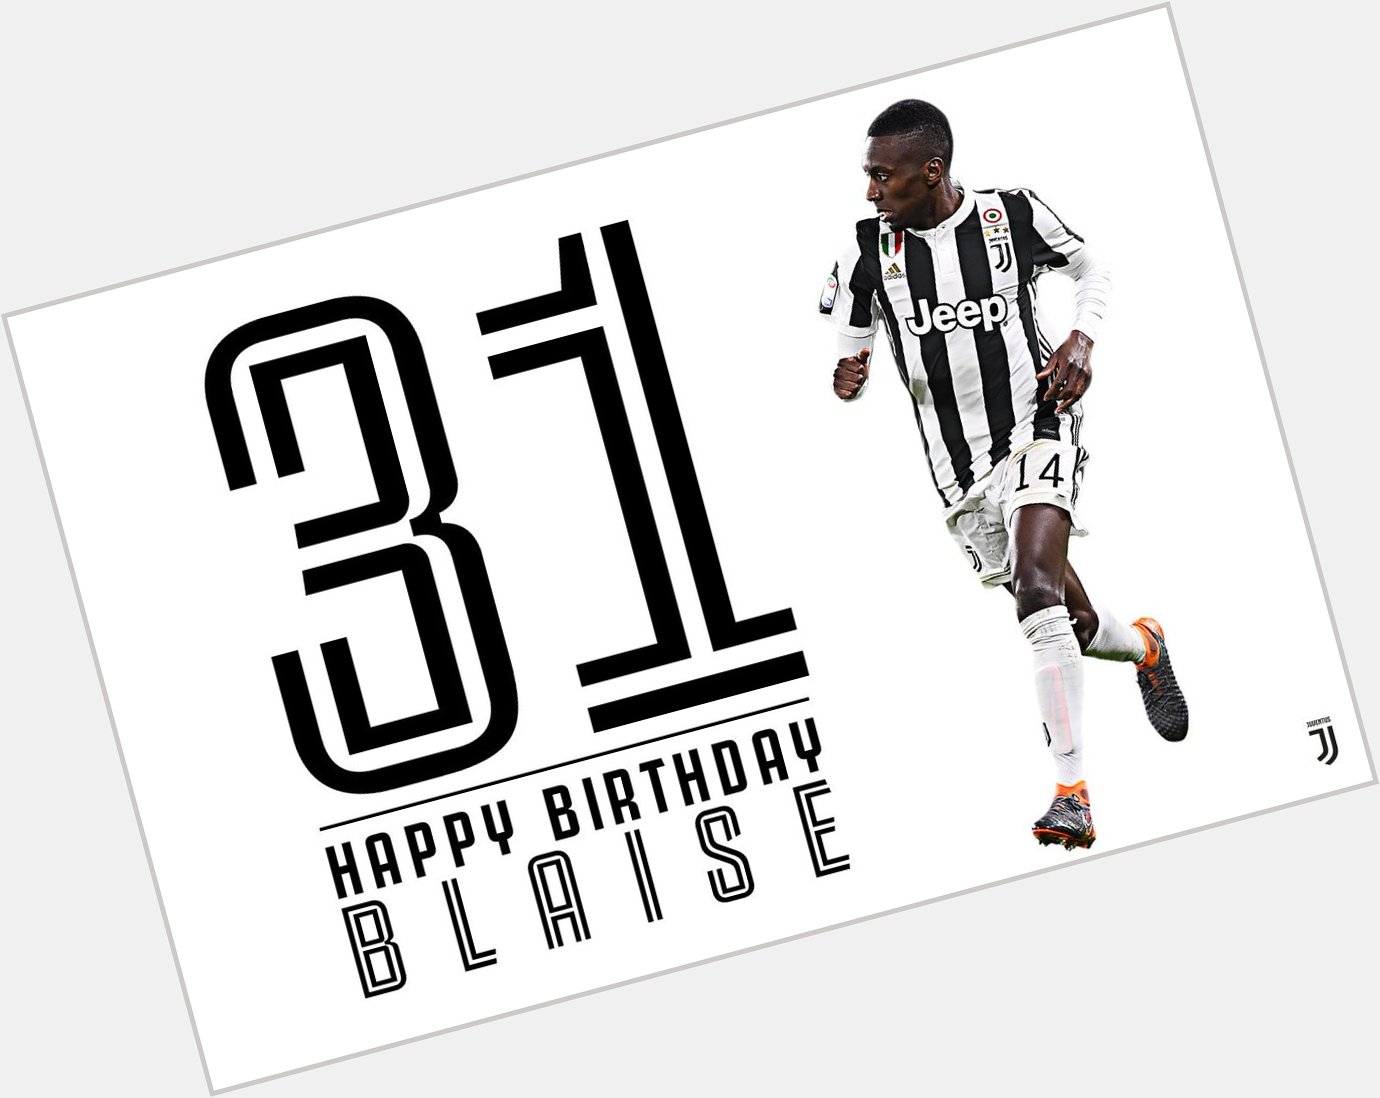 Team:Bon anniversaire, Blaise  